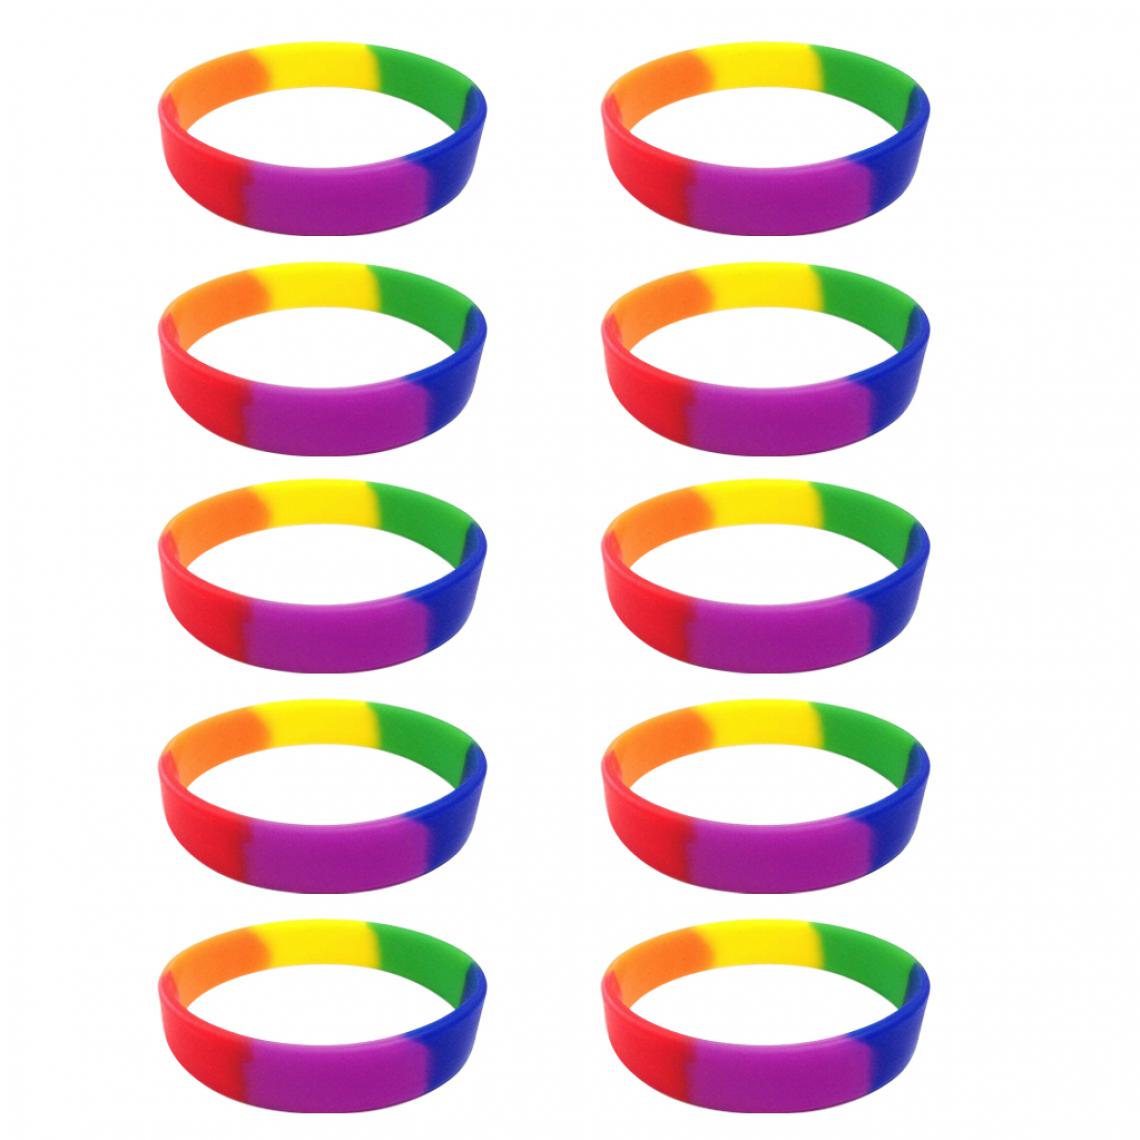 marque generique - 10 Pièces / Paquet Blanc Bracelet En Silicone Bracelet En Caoutchouc De Mode Rainbow - Bracelet connecté